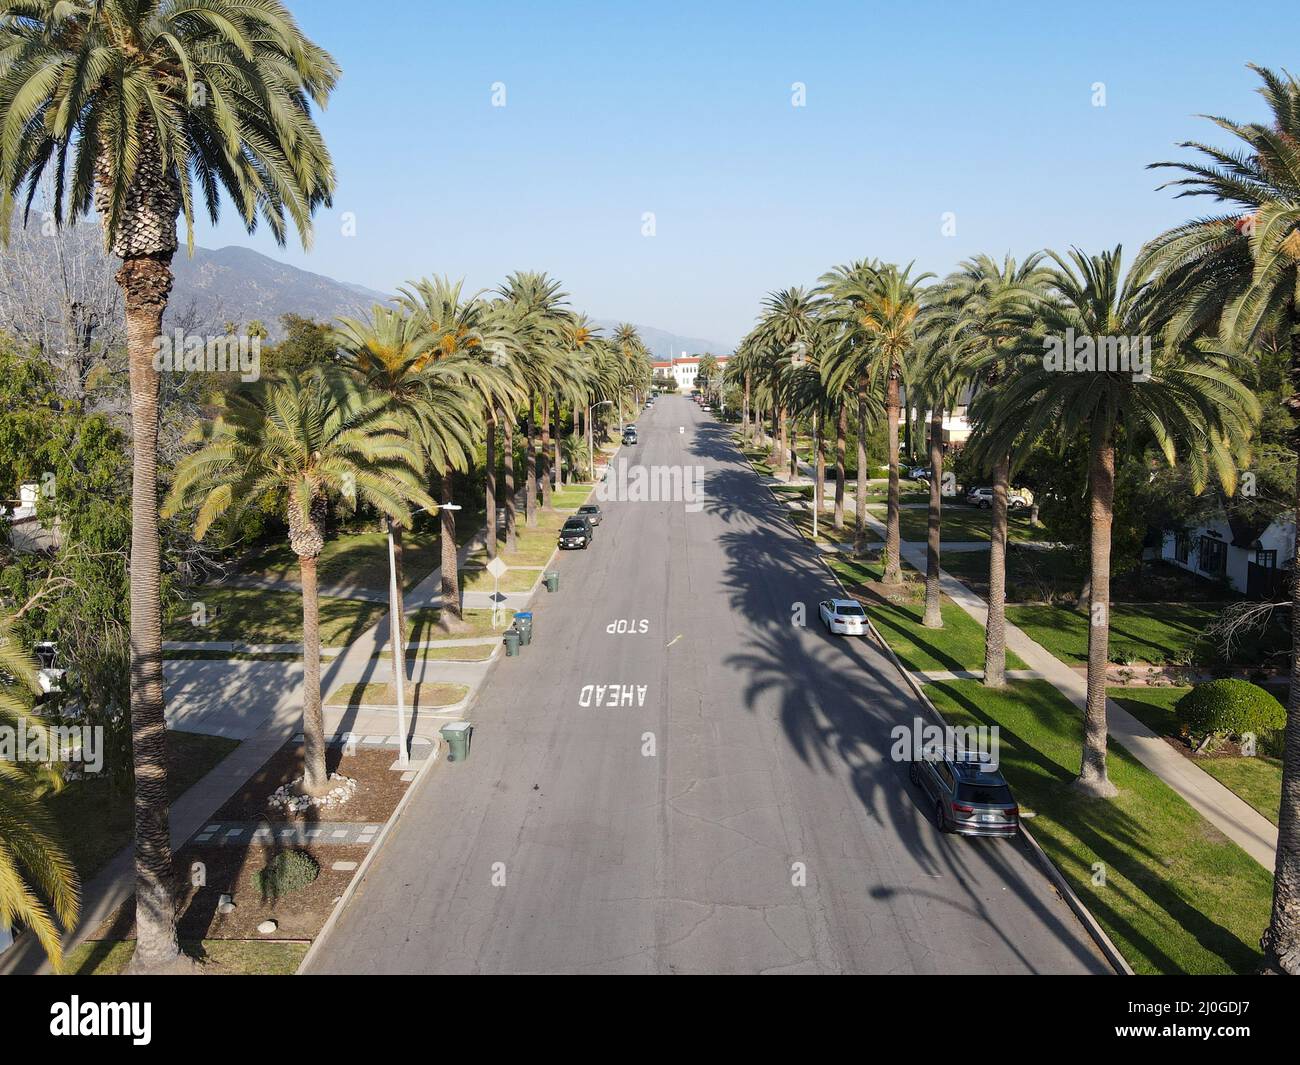 Vue aérienne de la rue bordée de palmiers dans le quartier de Pasadena en Californie Banque D'Images